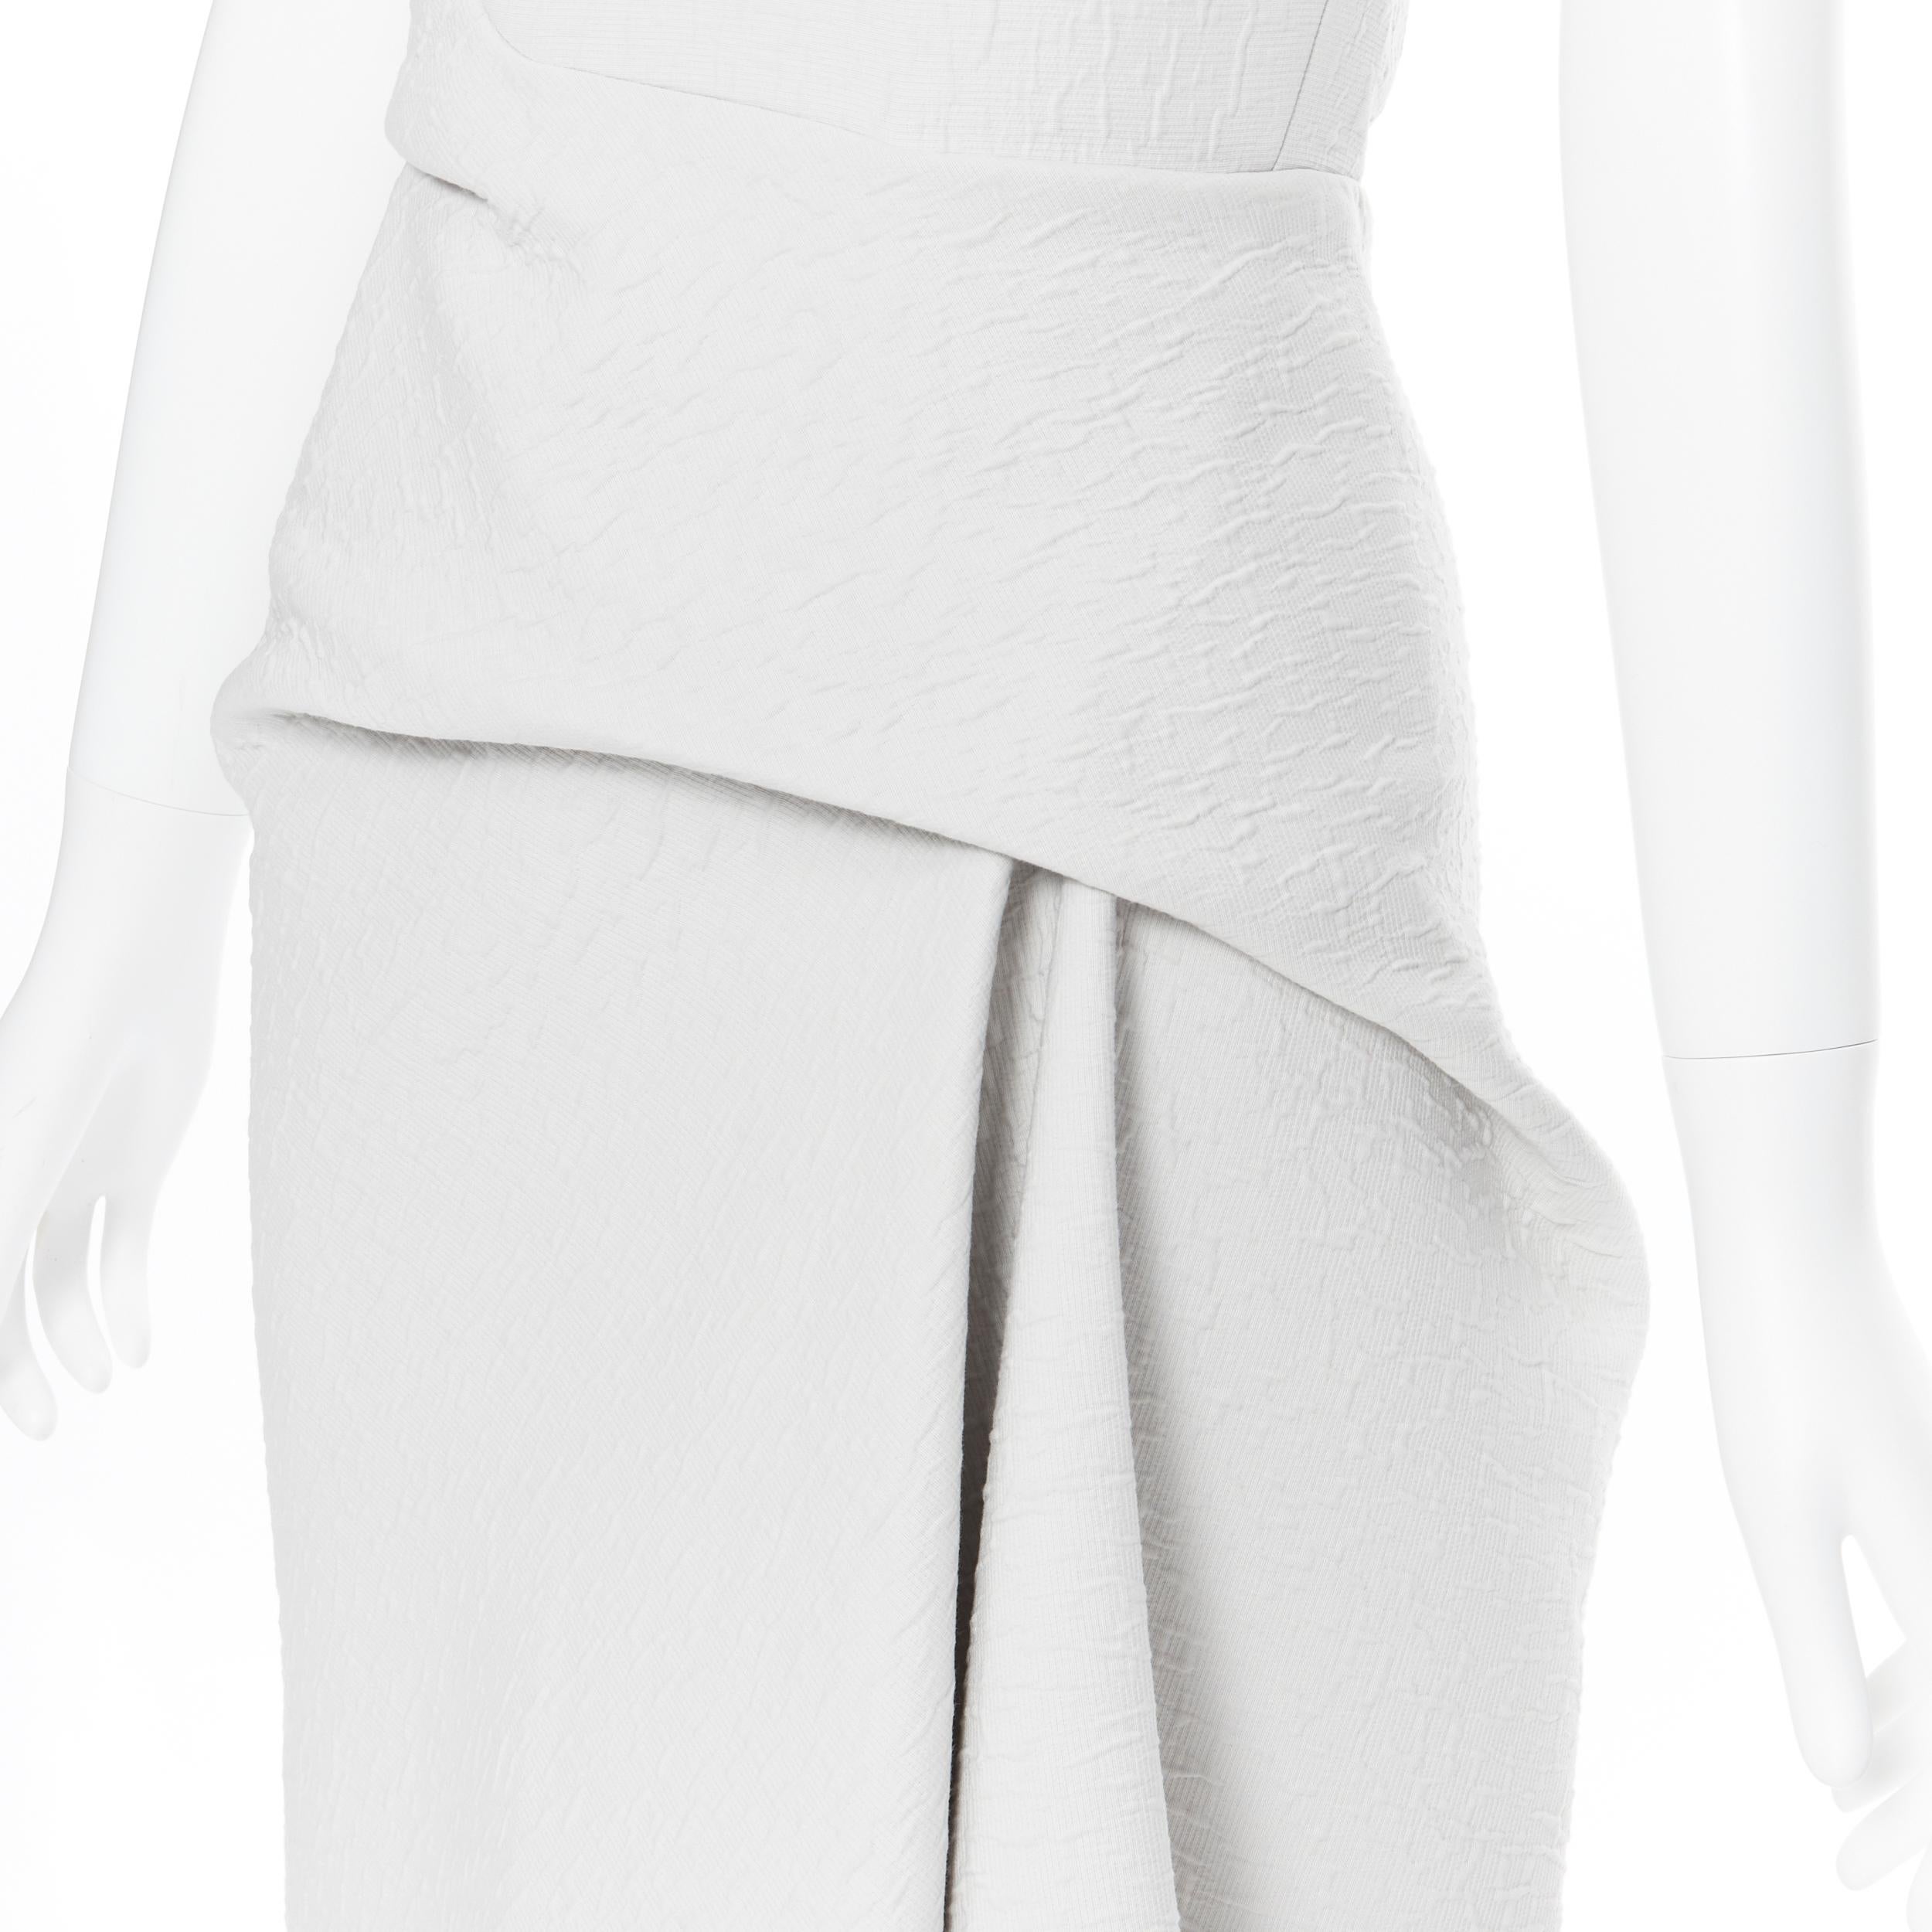 MATICEVSKI 2017 Meta light grey cloque draped gathered waist dress UK6 XS 1